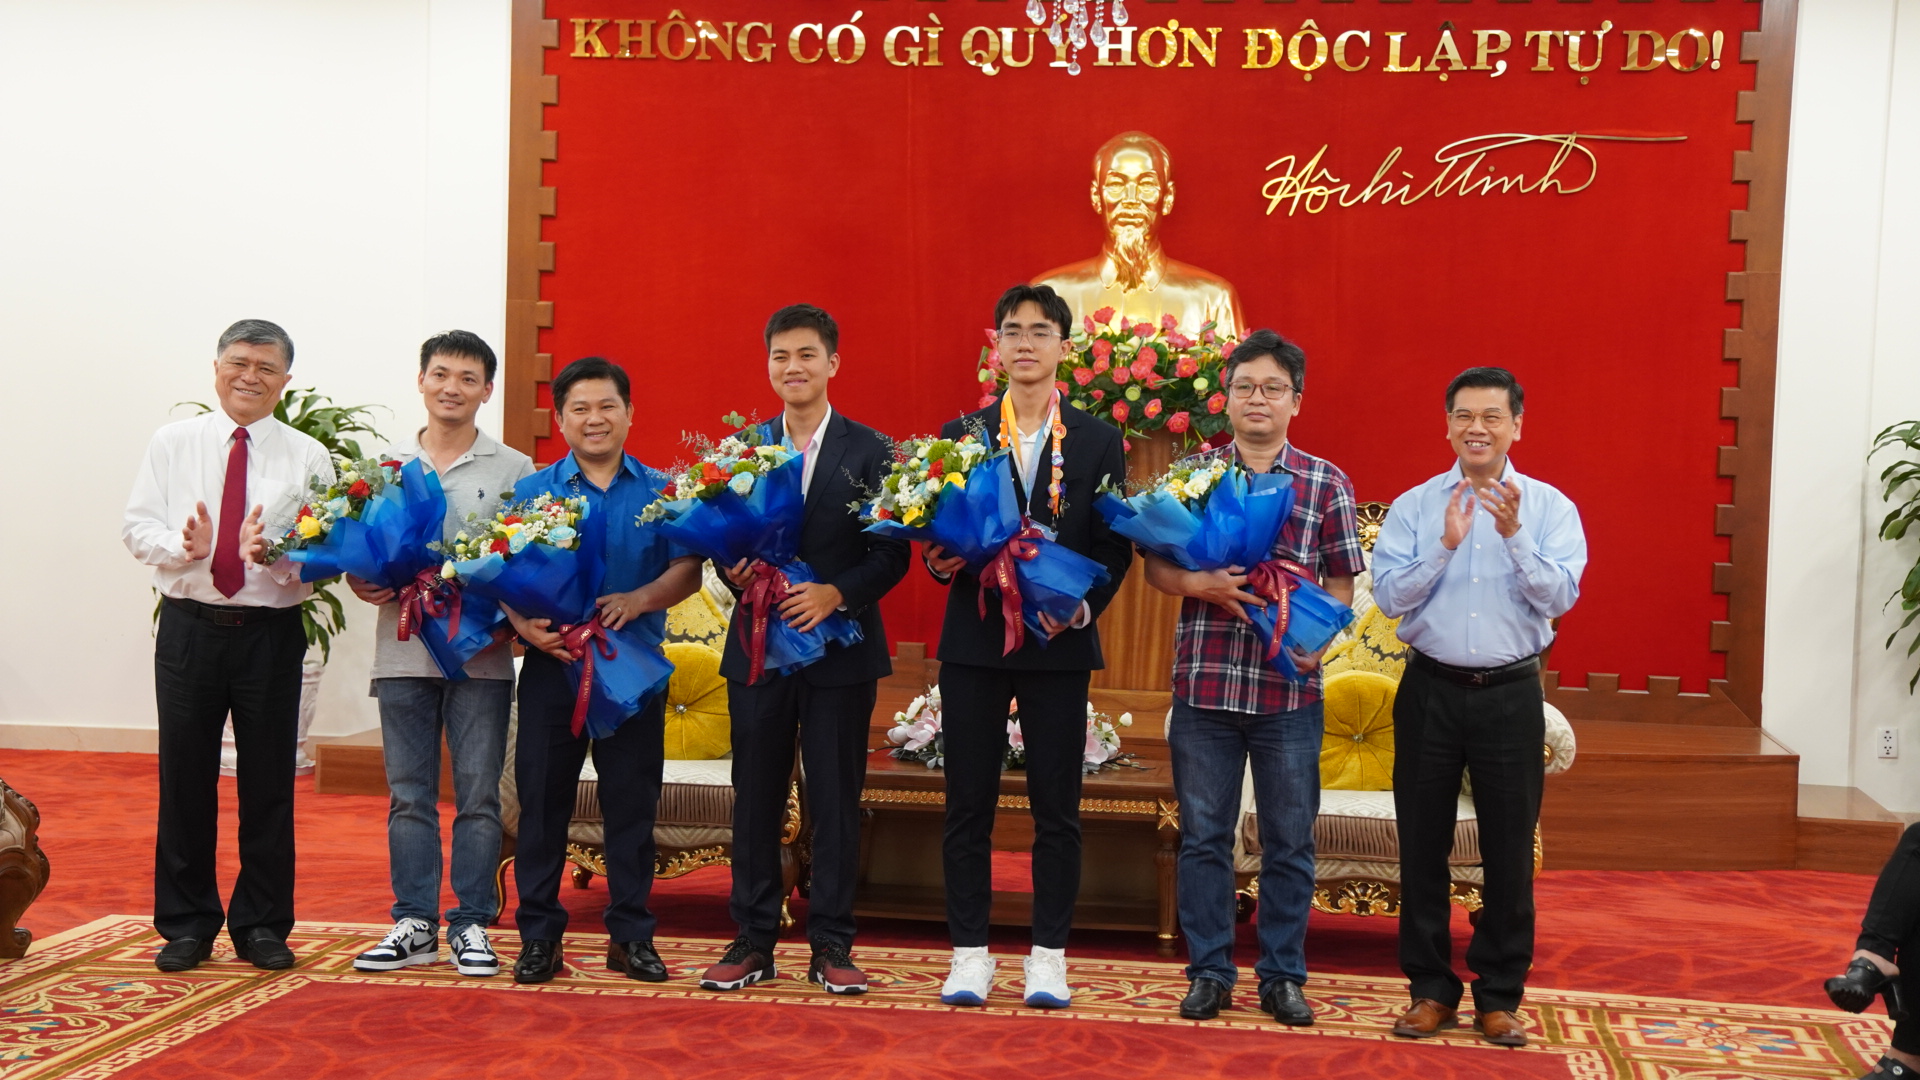 Hai học sinh Việt Nam đoạt giải nhì khoa học kỹ thuật quốc tế: Cảm giác đã lắm!- Ảnh 1.